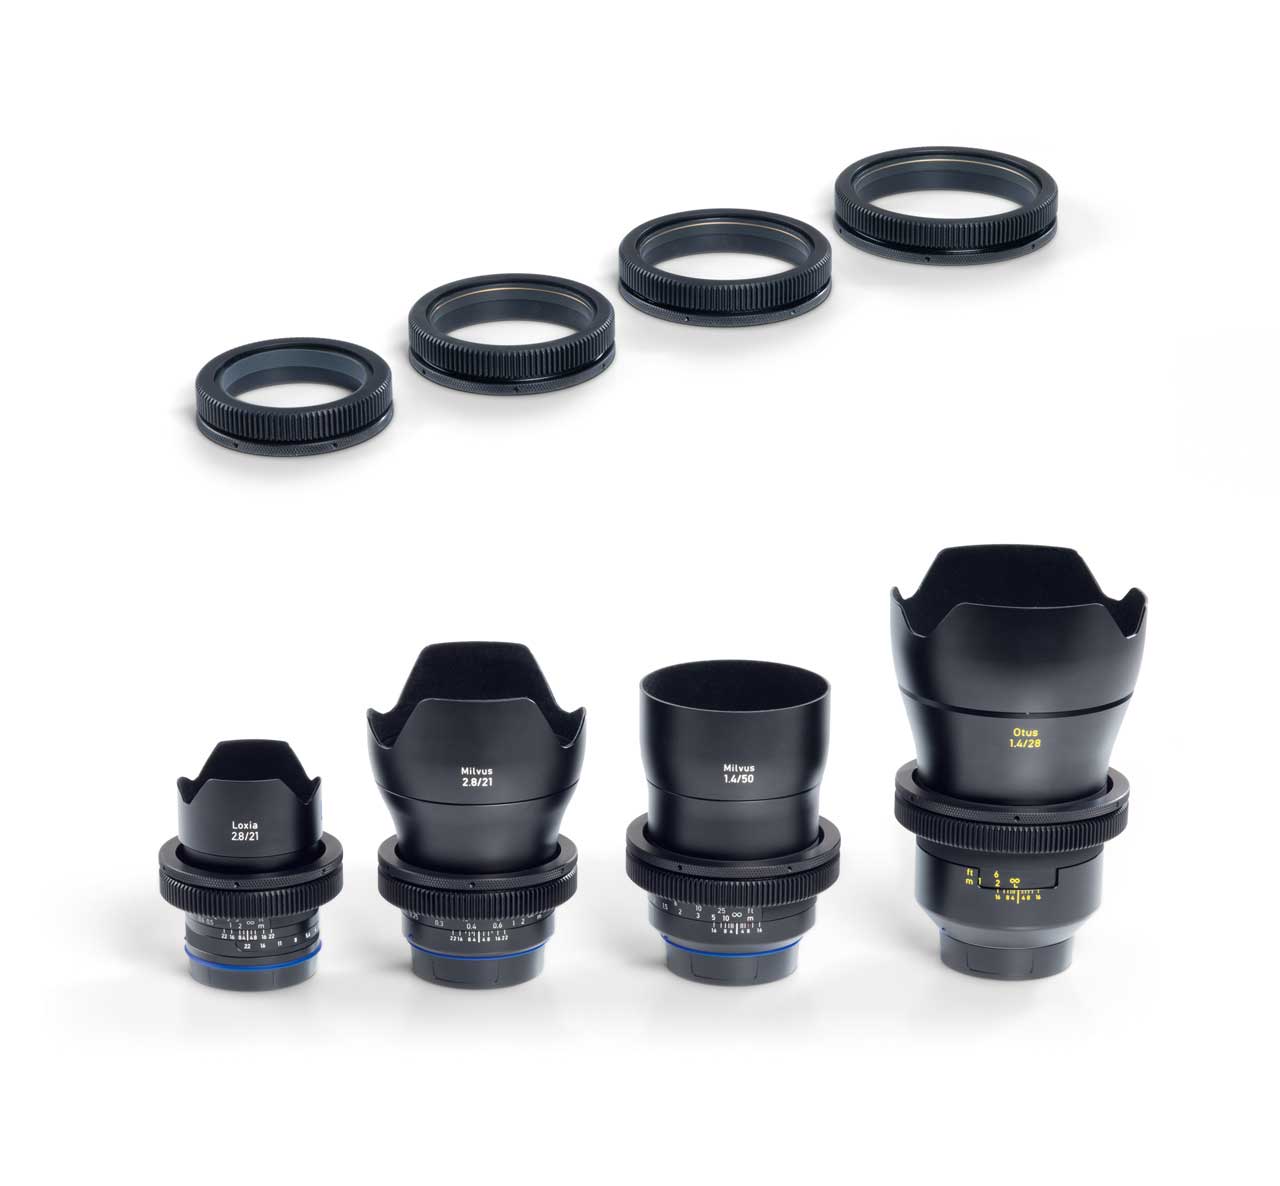 ZEISS Lens Gears gibt es in vier verschiedenen Größen für alle ZEISS Otus, ZEISS Milvus und ZEISS Loxia Objektive